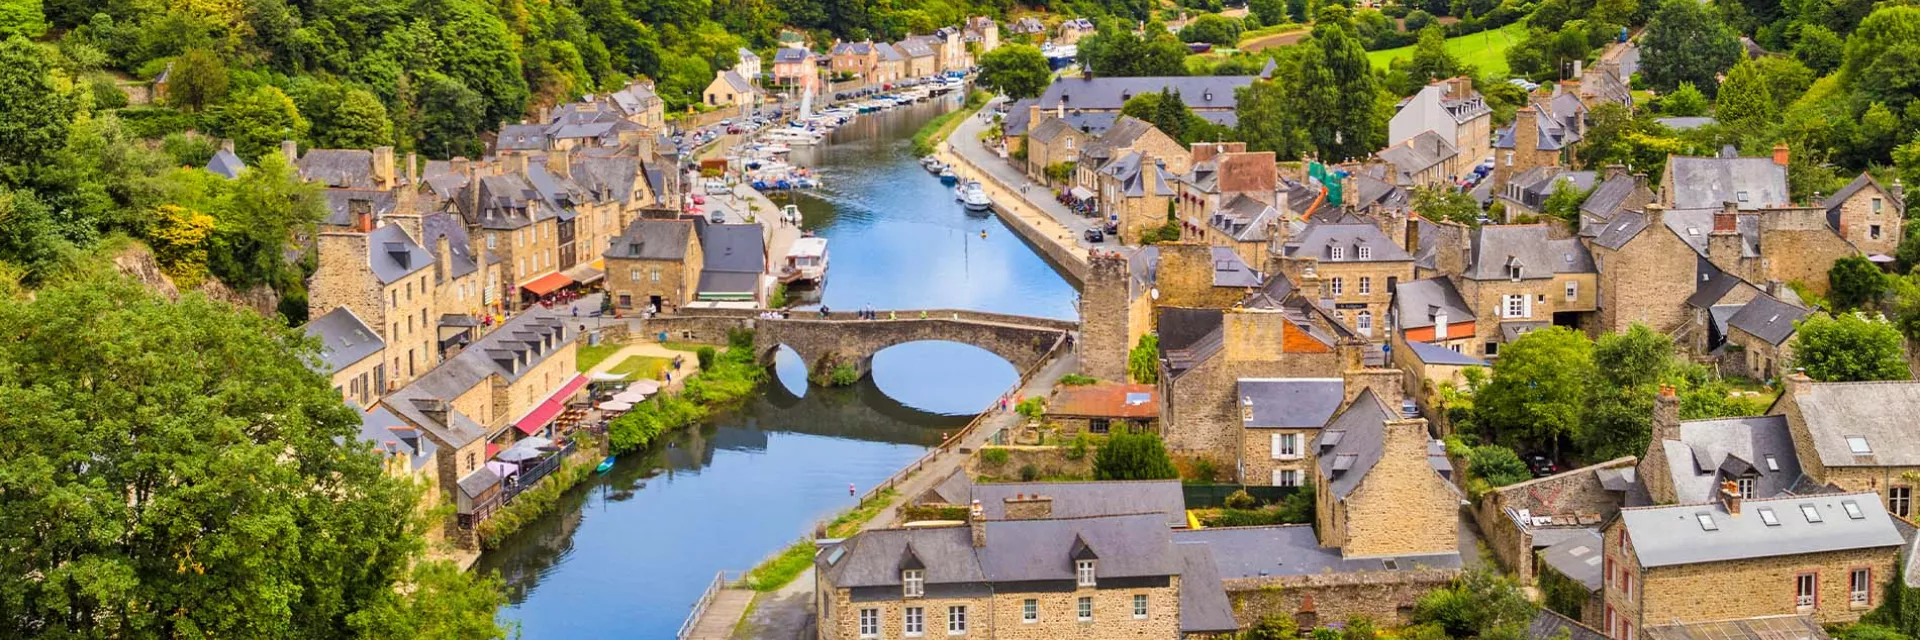 Les plus beaux villages de Bretagne - Dinan, cité médiévale